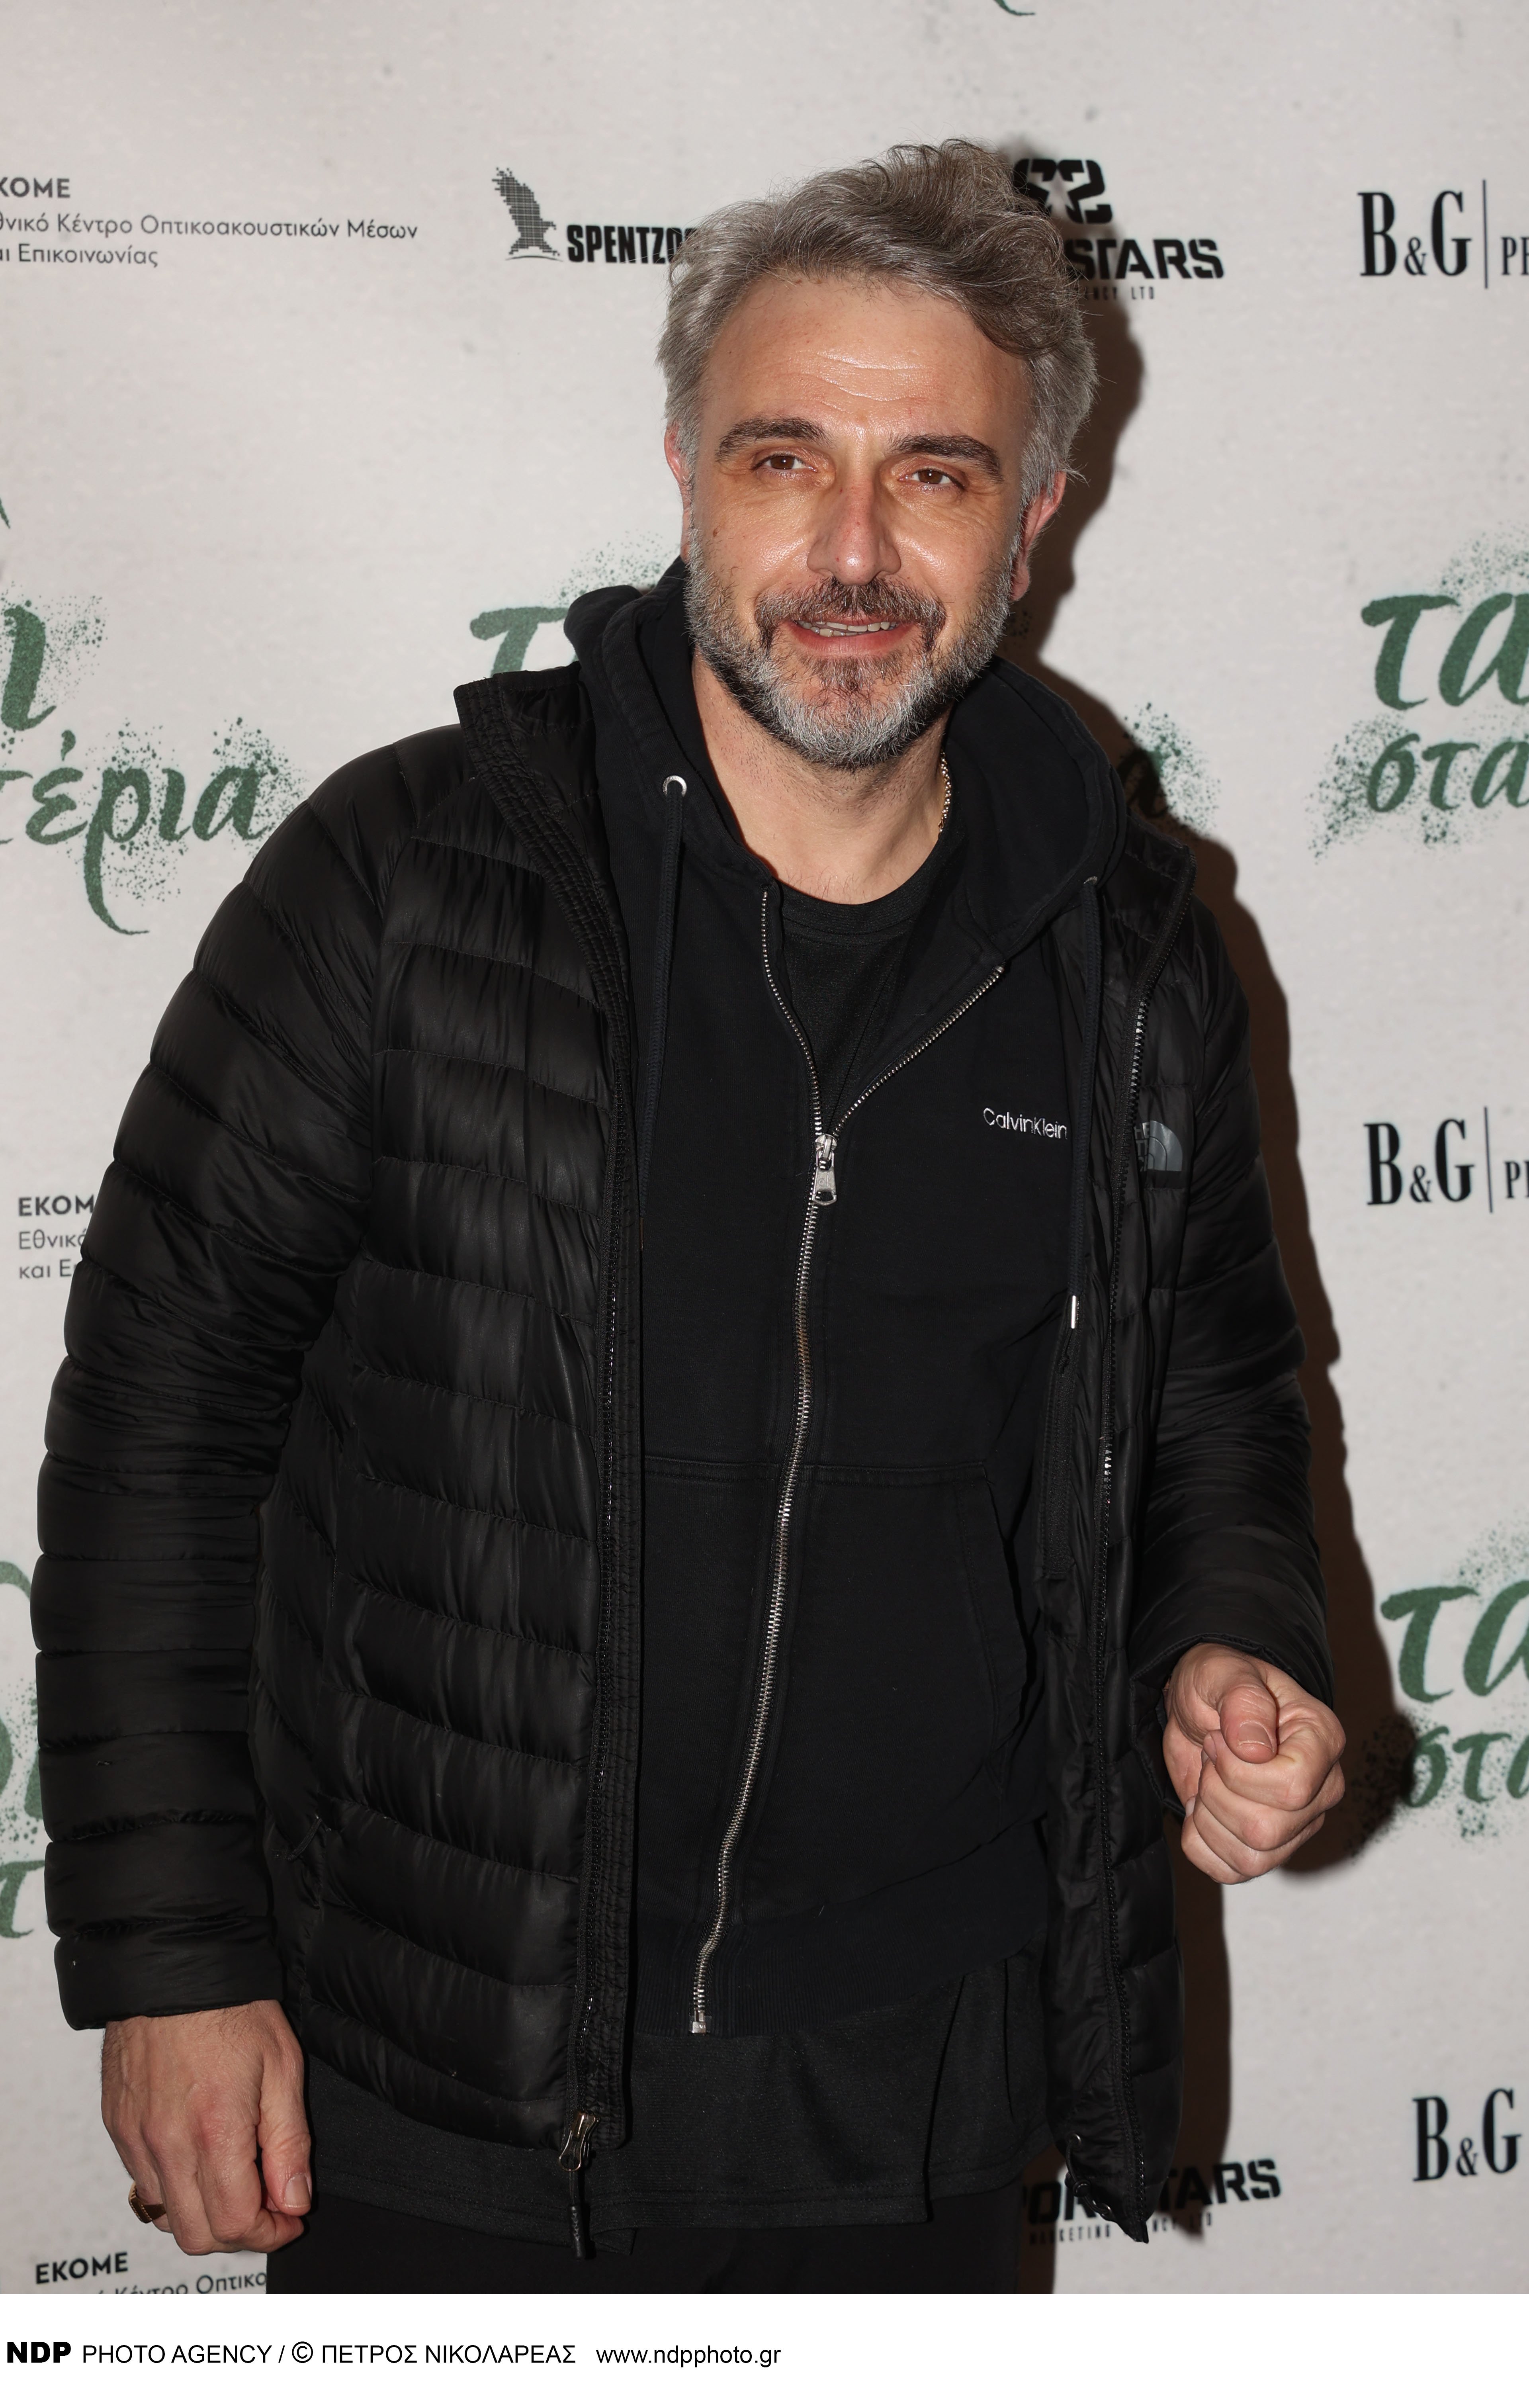 Ο Φάνης Μουρατίδης στο Bestofyou.gr: Ο ρόλος στο Maestro, η σημαντικότερη στιγμή του στην τηλεόραση, η οικογένεια και η αναφορά στους γιους του